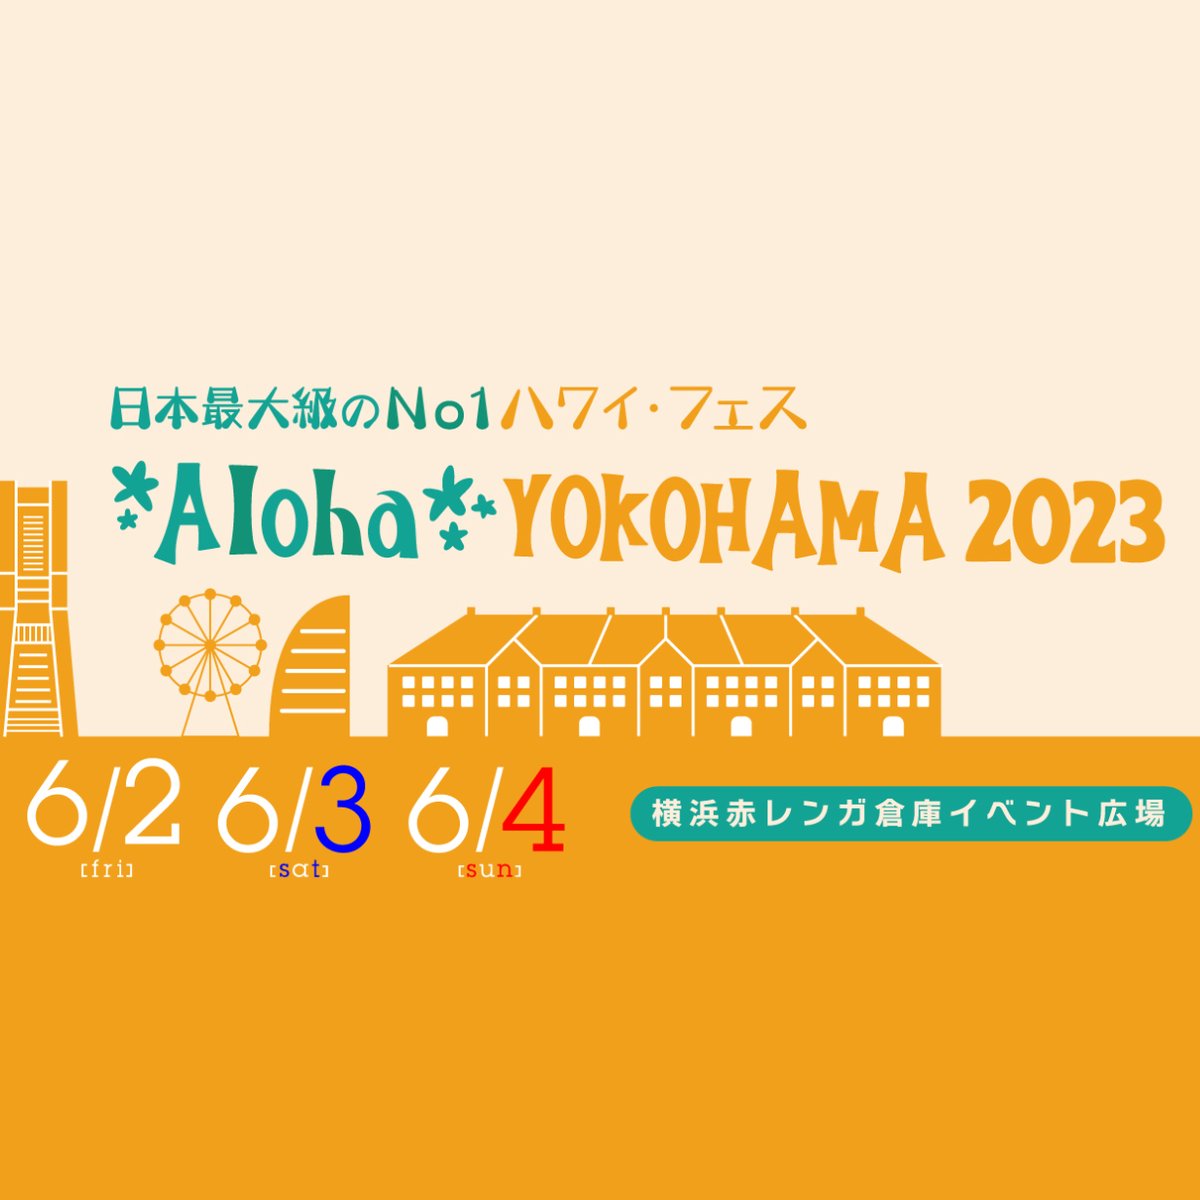 【アロハヨコハマ2023に出店します！】

2023年6月2日（金）〜6月4日（日）に横浜赤レンガ倉庫イベント広場で開催される、日本最大級のハワイ・フェス「アロハヨコハマ2023」に出店することが決まりました。

#アロハヨコハマ #ラッセン #クリスチャンラッセン #クリスチャンリースラッセン